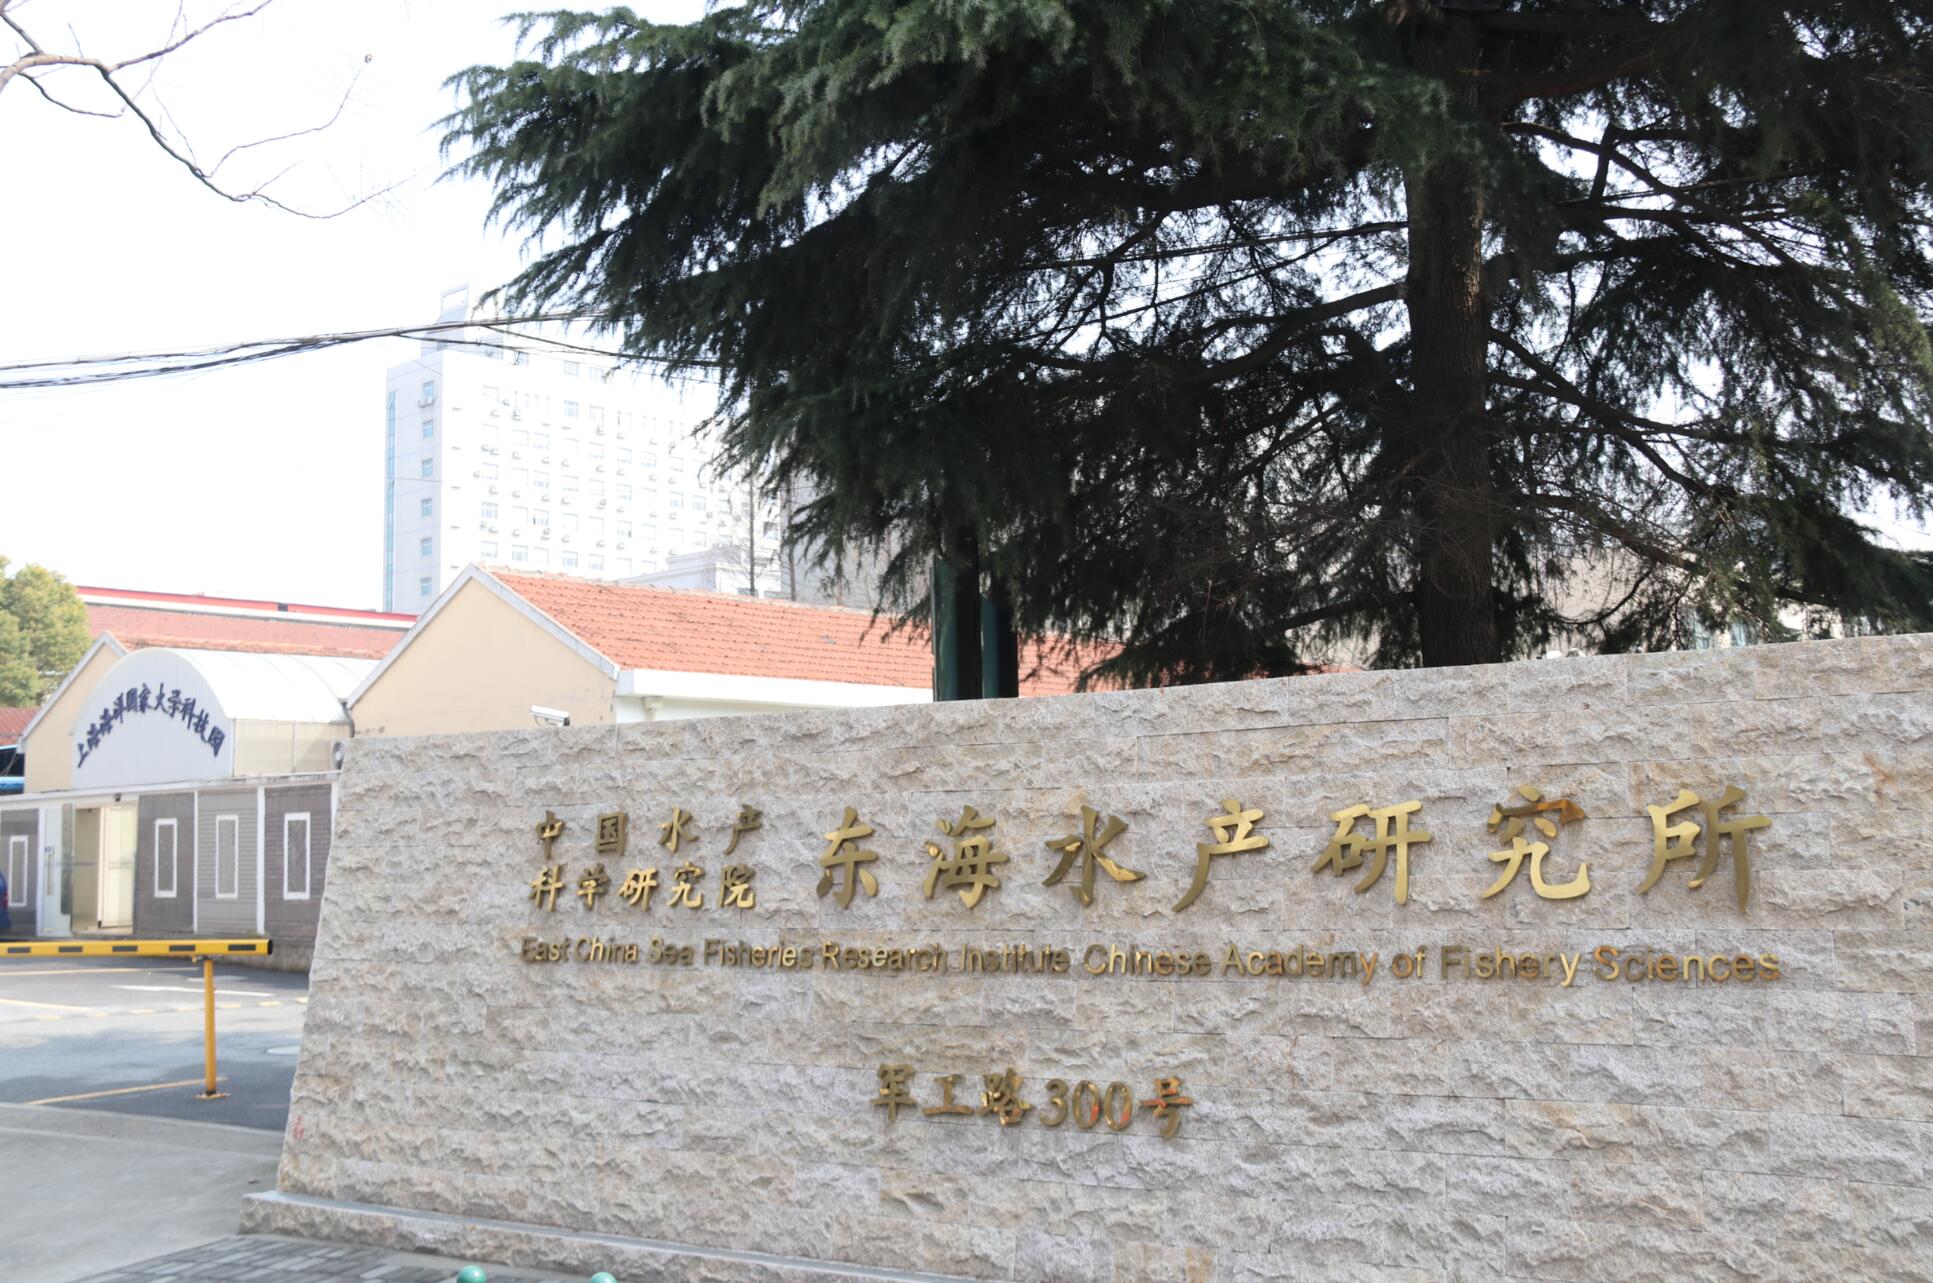 中国水产科学研究院东海水产研究所是国家综合性渔业研究机构